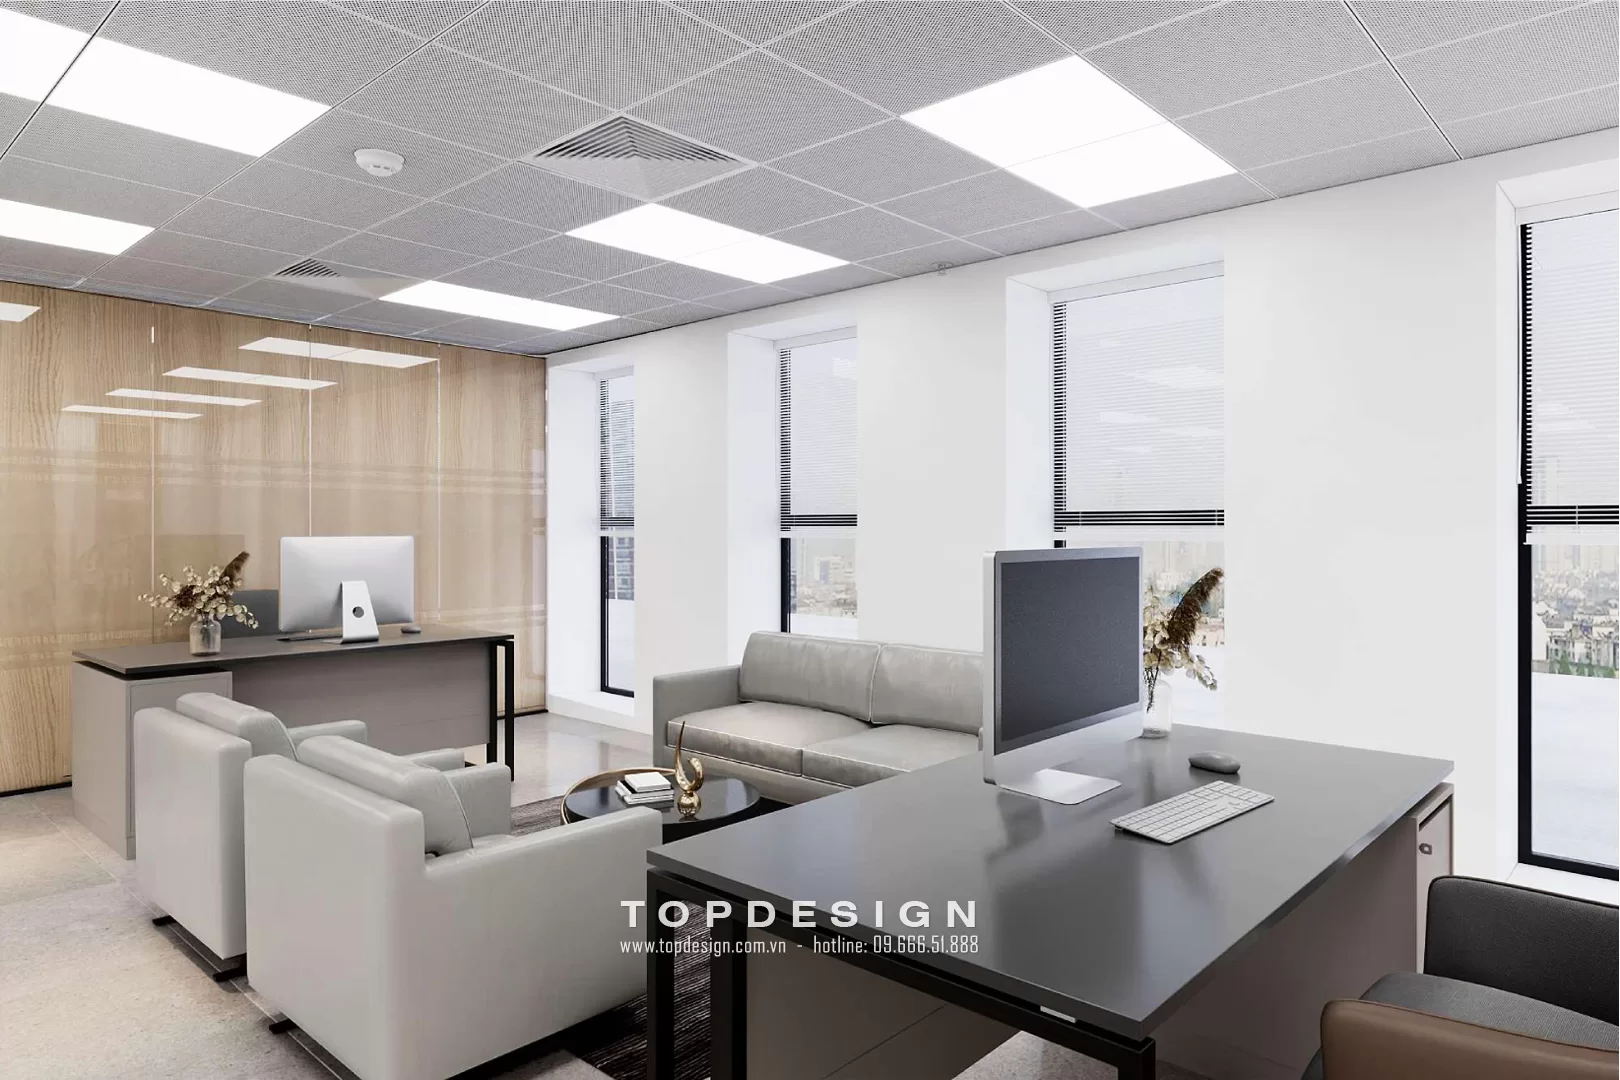 Quy trình thiết kế nội thất văn phòng - TOPDESIGN - 4